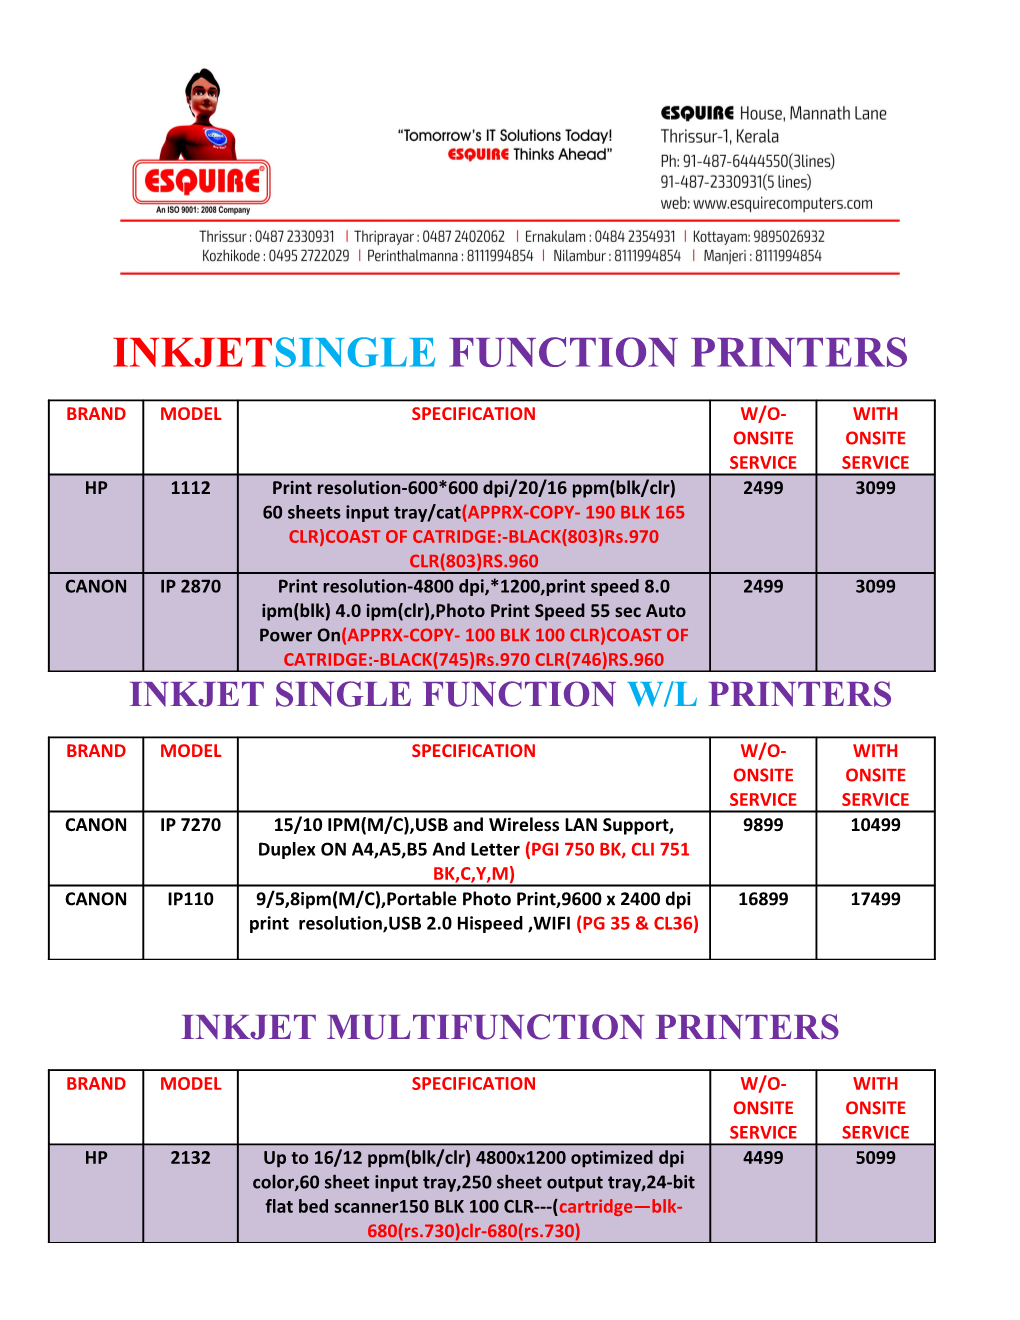 Inkjet Single Function W/L Printers